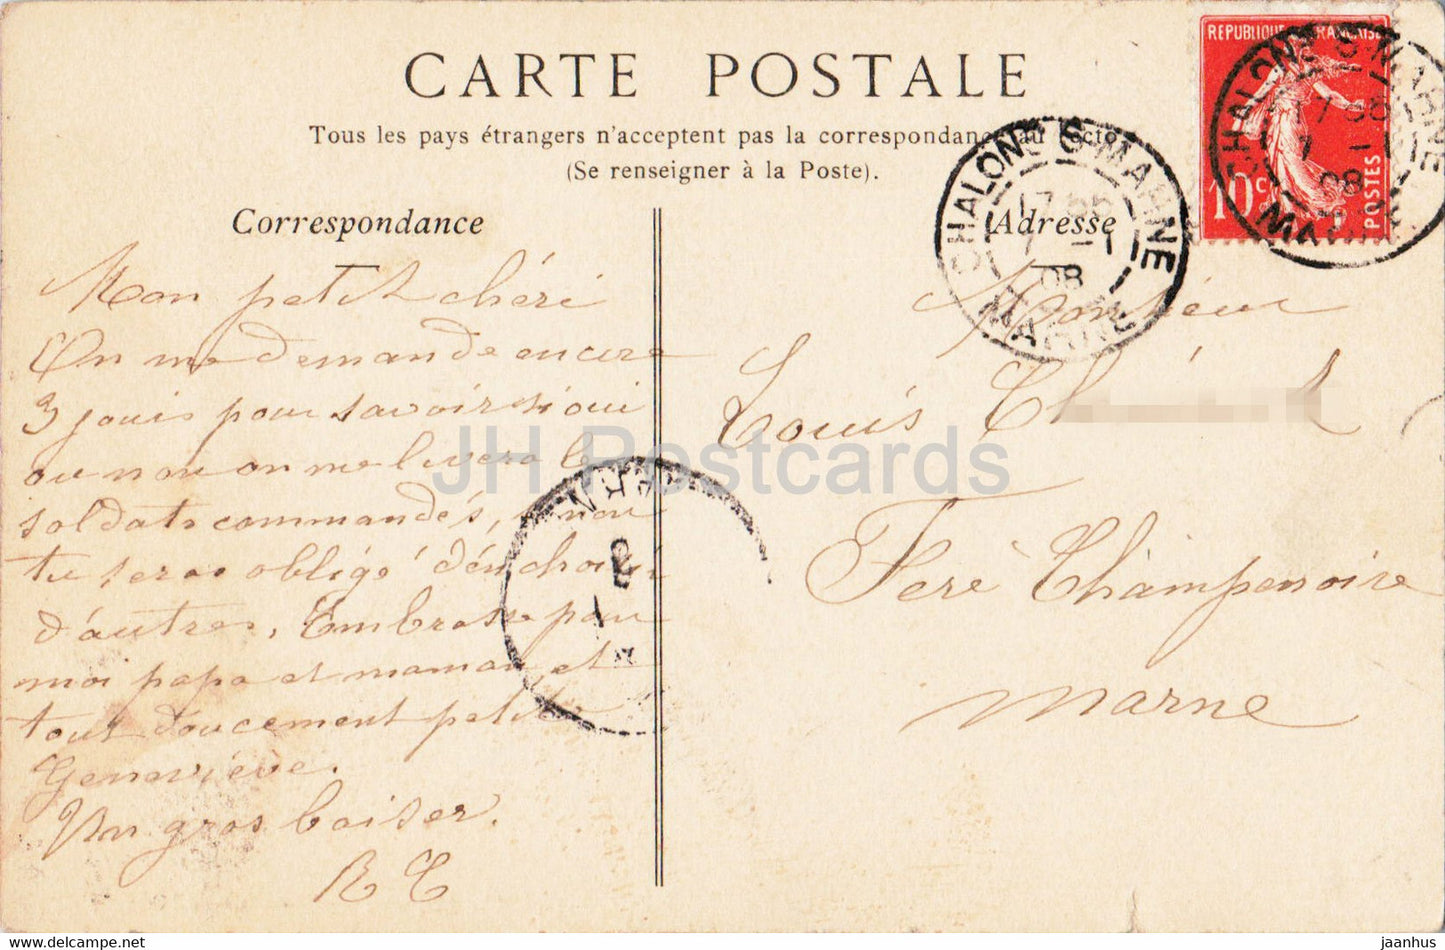 Chalons sur Marne – La Place de la République et la Fontaine – 62 – alte Postkarte – 1908 – Frankreich – gebraucht